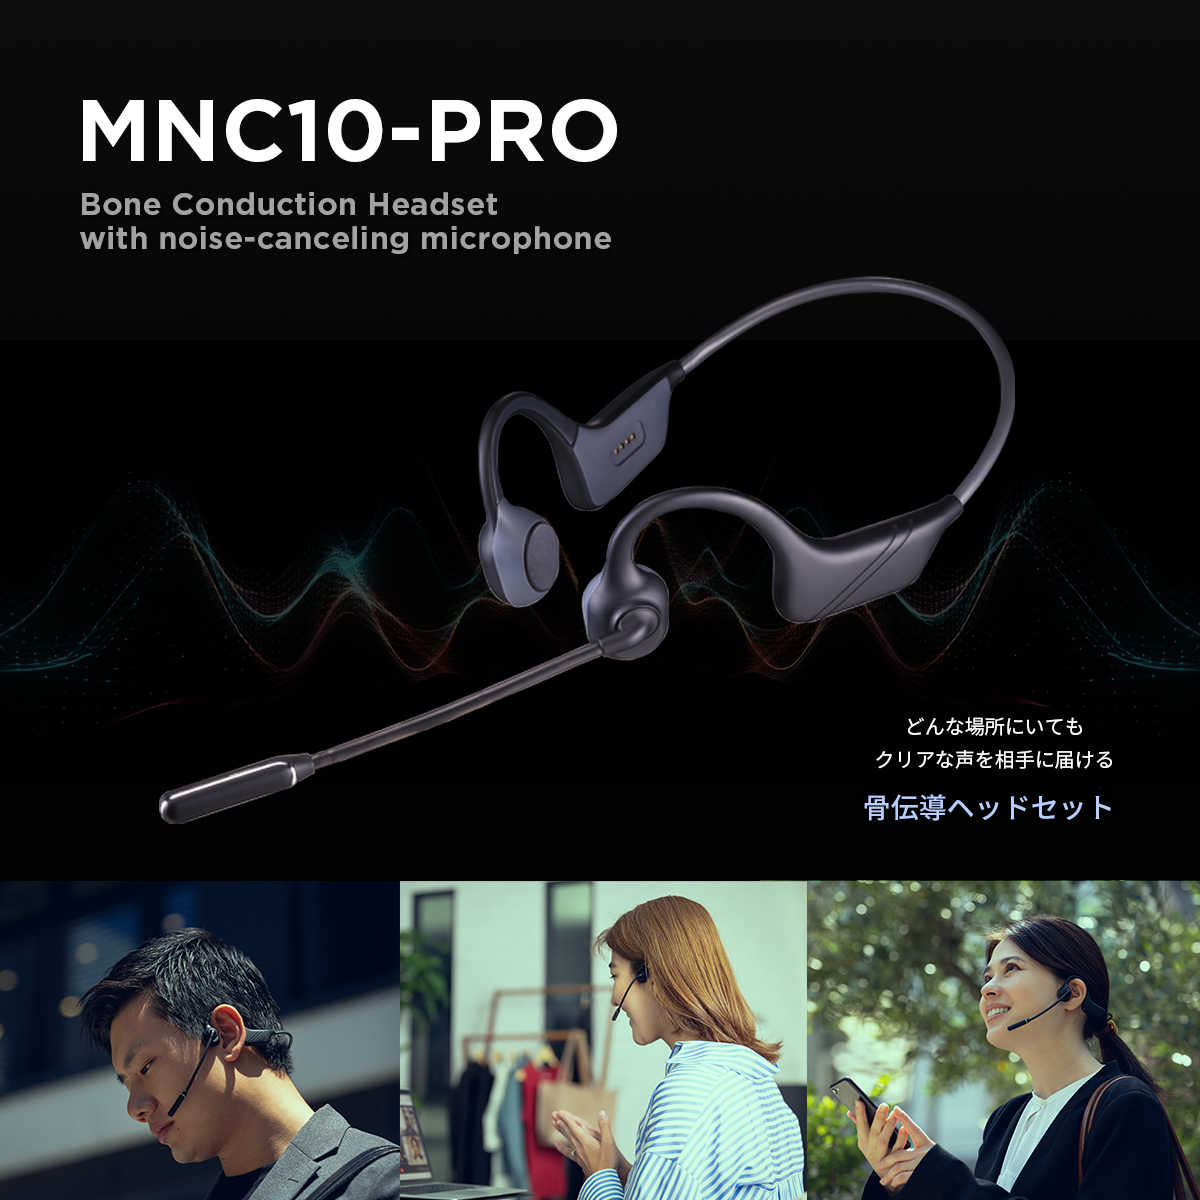 ノイズキャンセリング機能付きワイヤレス骨伝導ヘッドセット「MNC10-PRO」